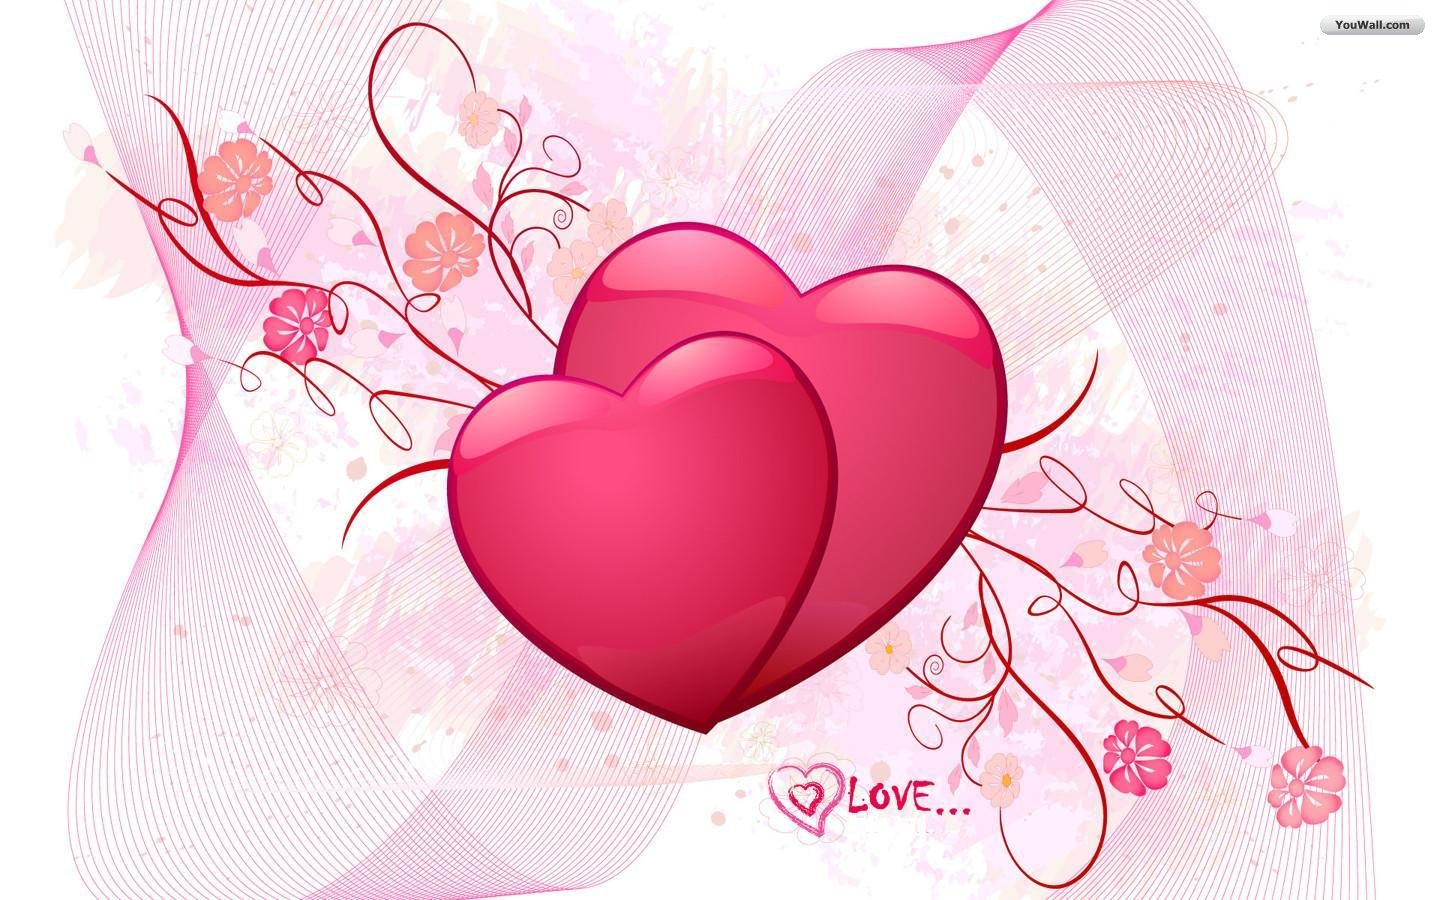 New Love Heart Desktop Wallpaper HD 1080p Pics